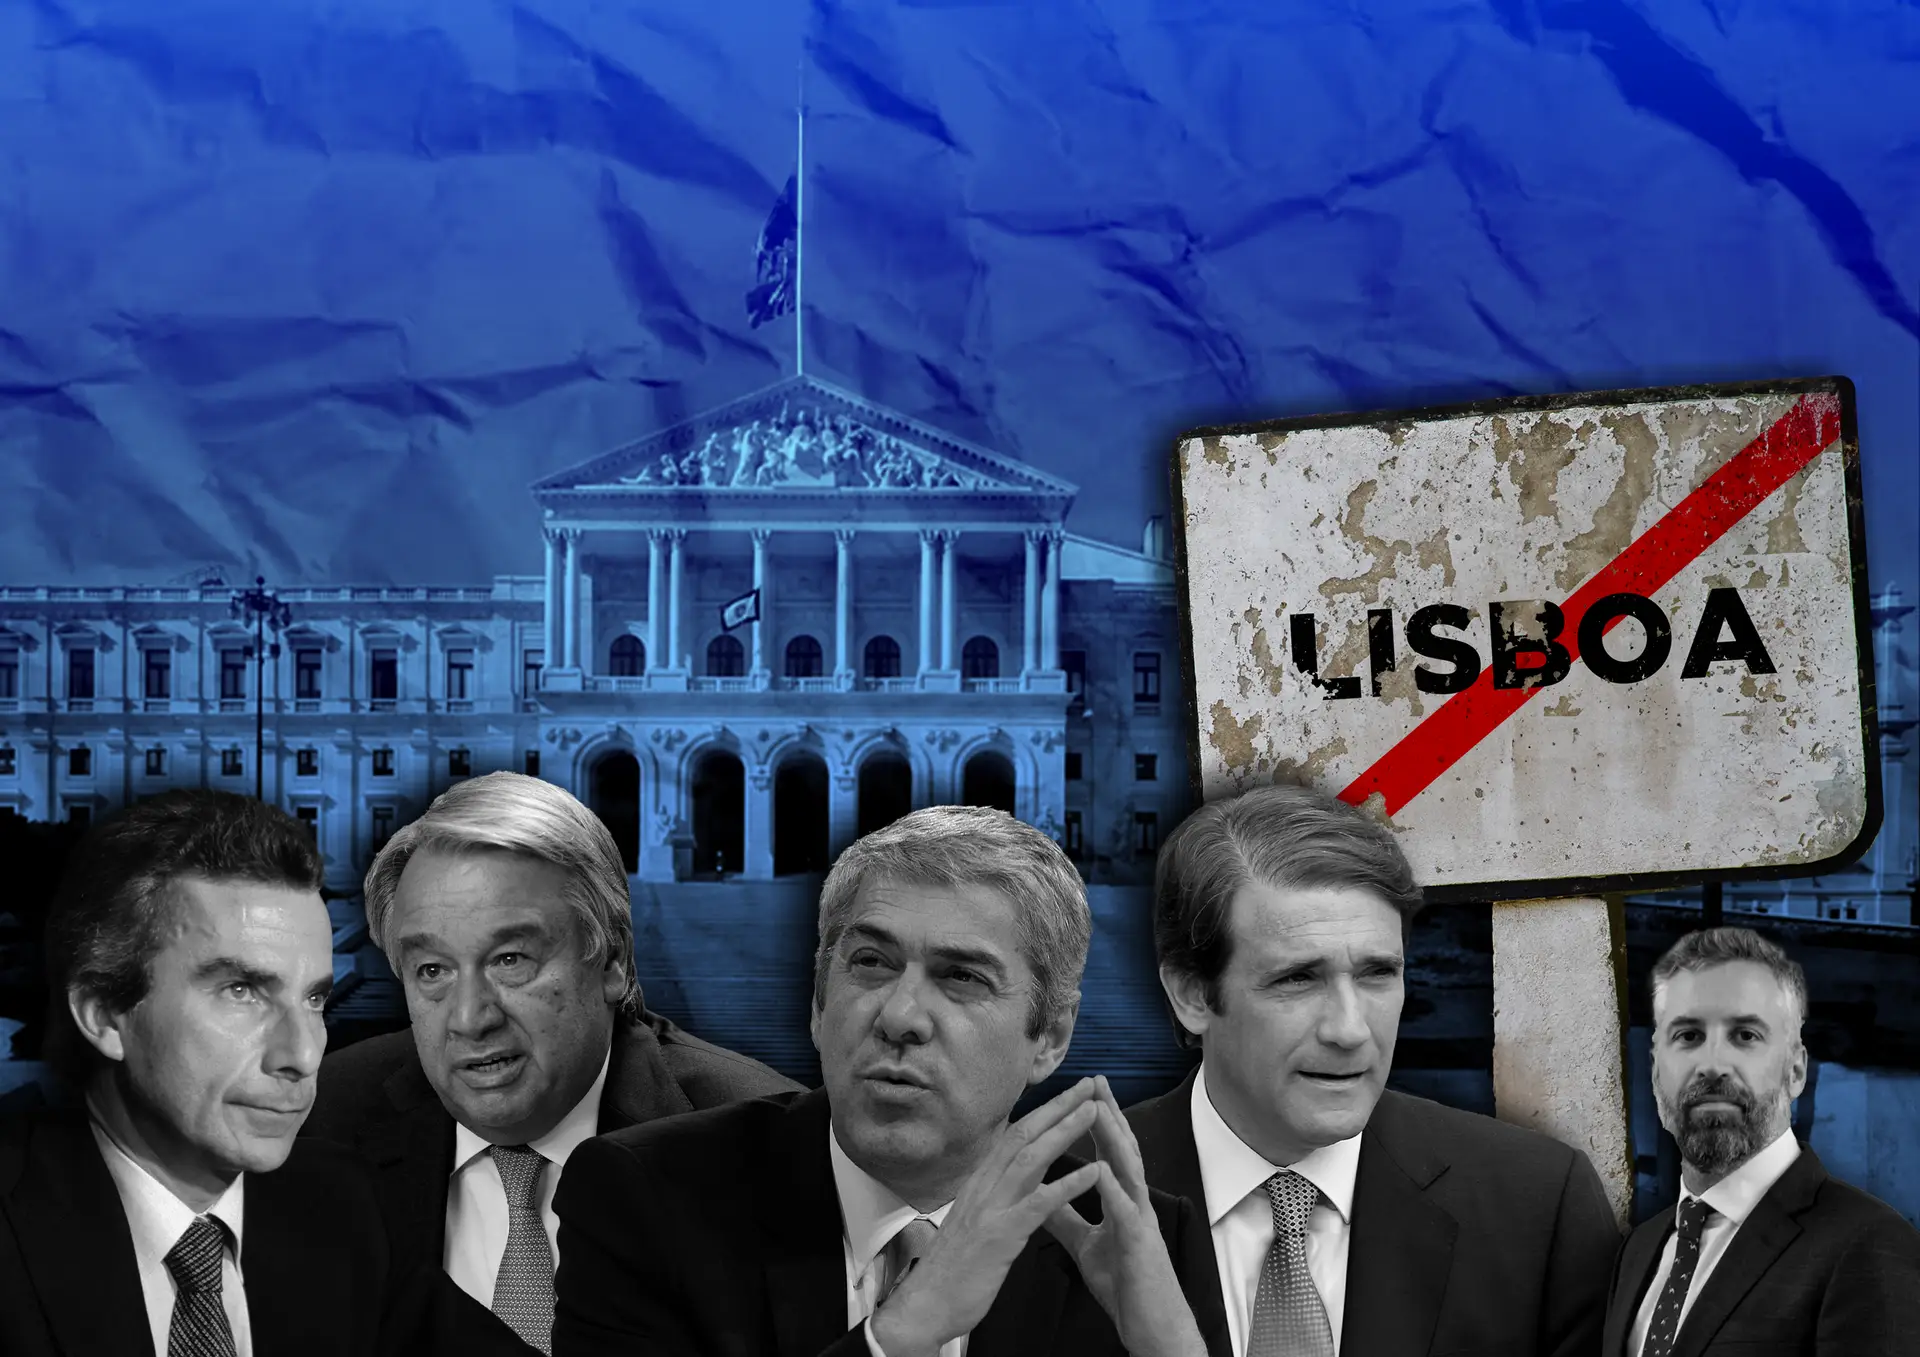 De Sá Carneiro a Pedro Nuno: quando os candidatos a primeiro-ministro não vêm de Lisboa